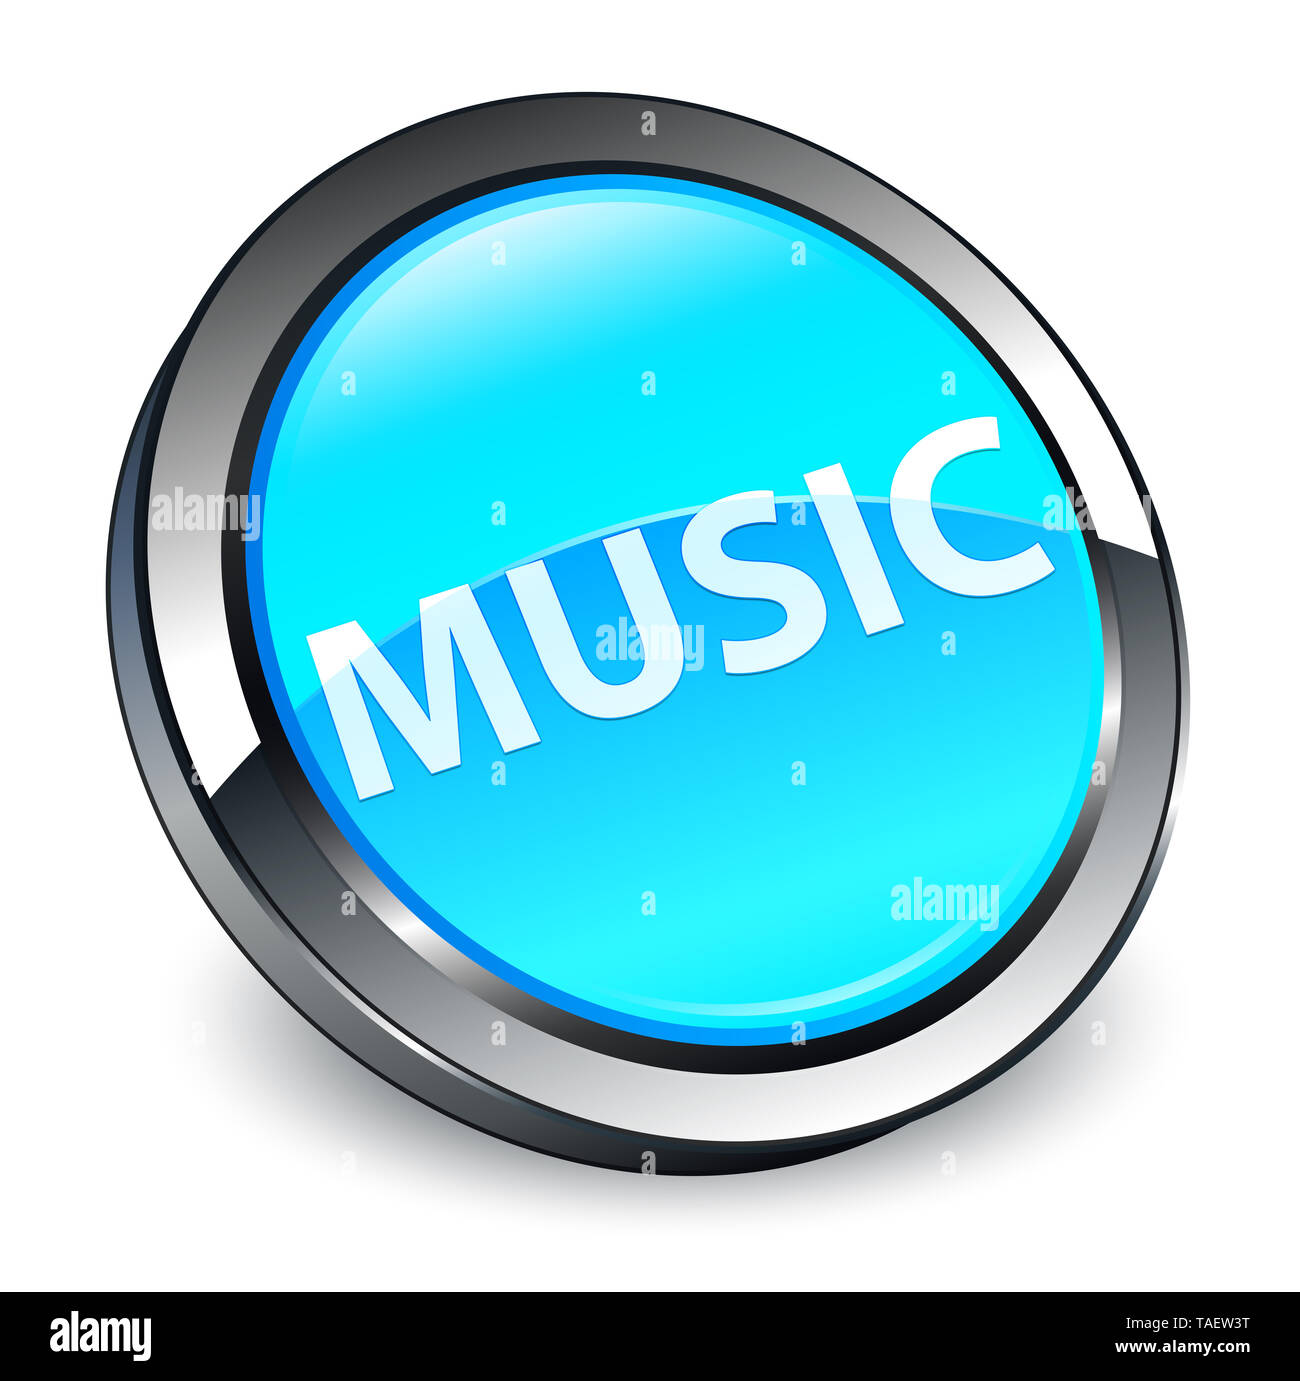 Musica isolati su 3d blu ciano pulsante rotondo illustrazione astratta Foto Stock